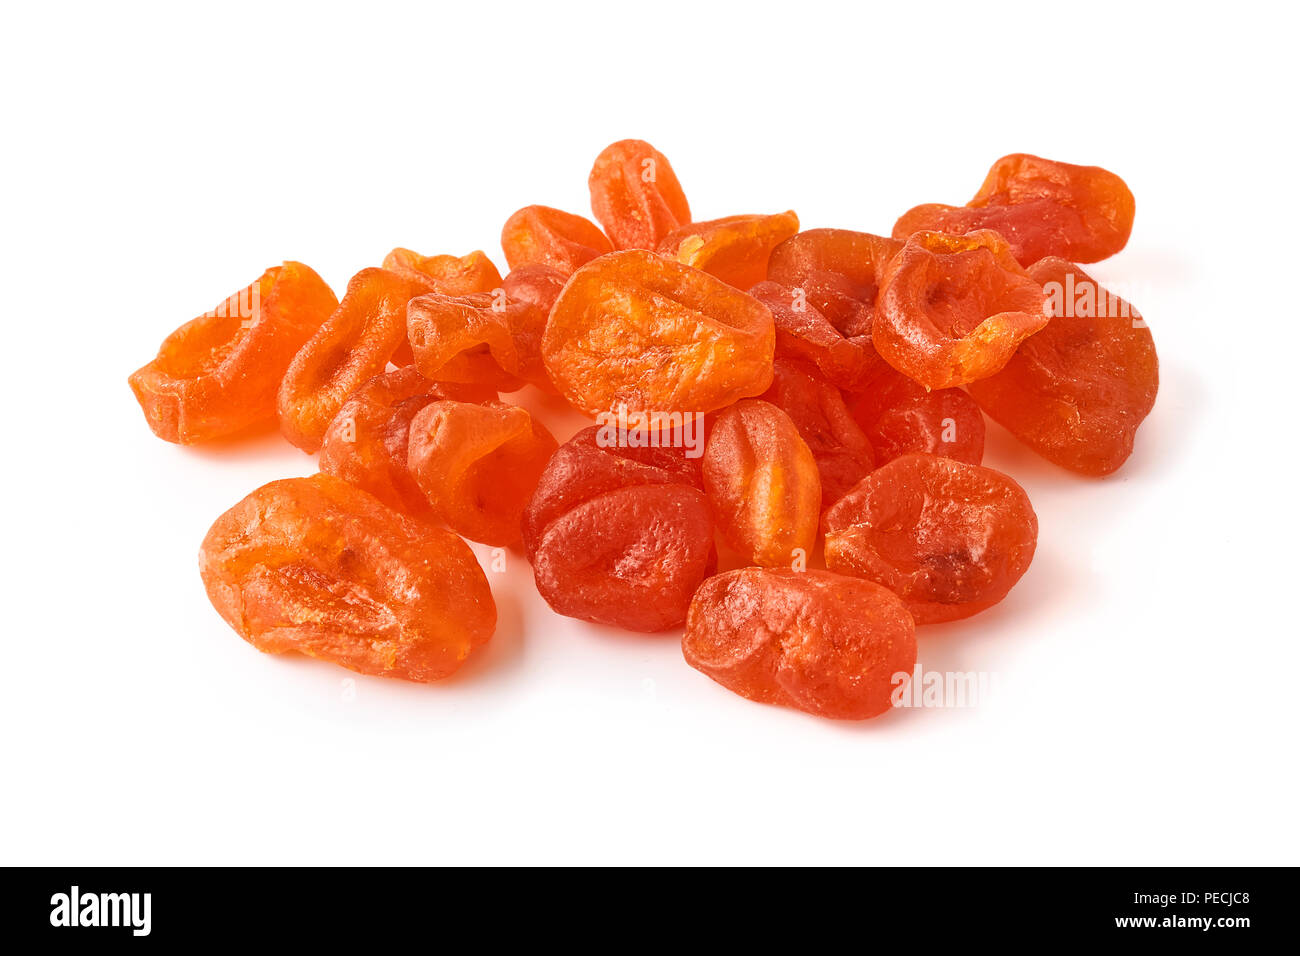 Dried orange kumquat isolated on white background. Stock Photo